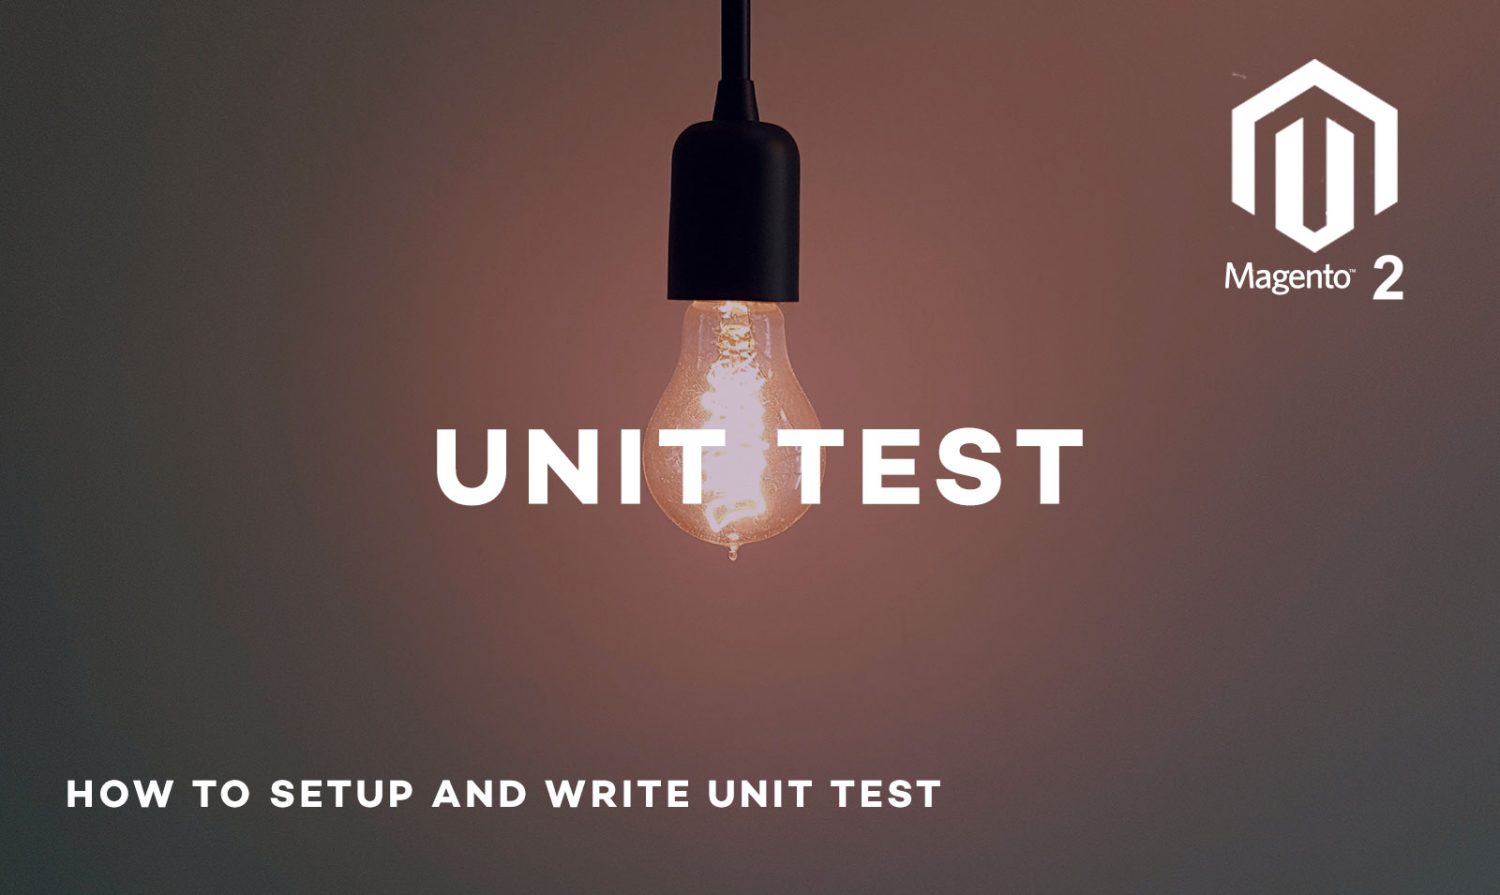 Magento 2 : How to setup and write unit test?